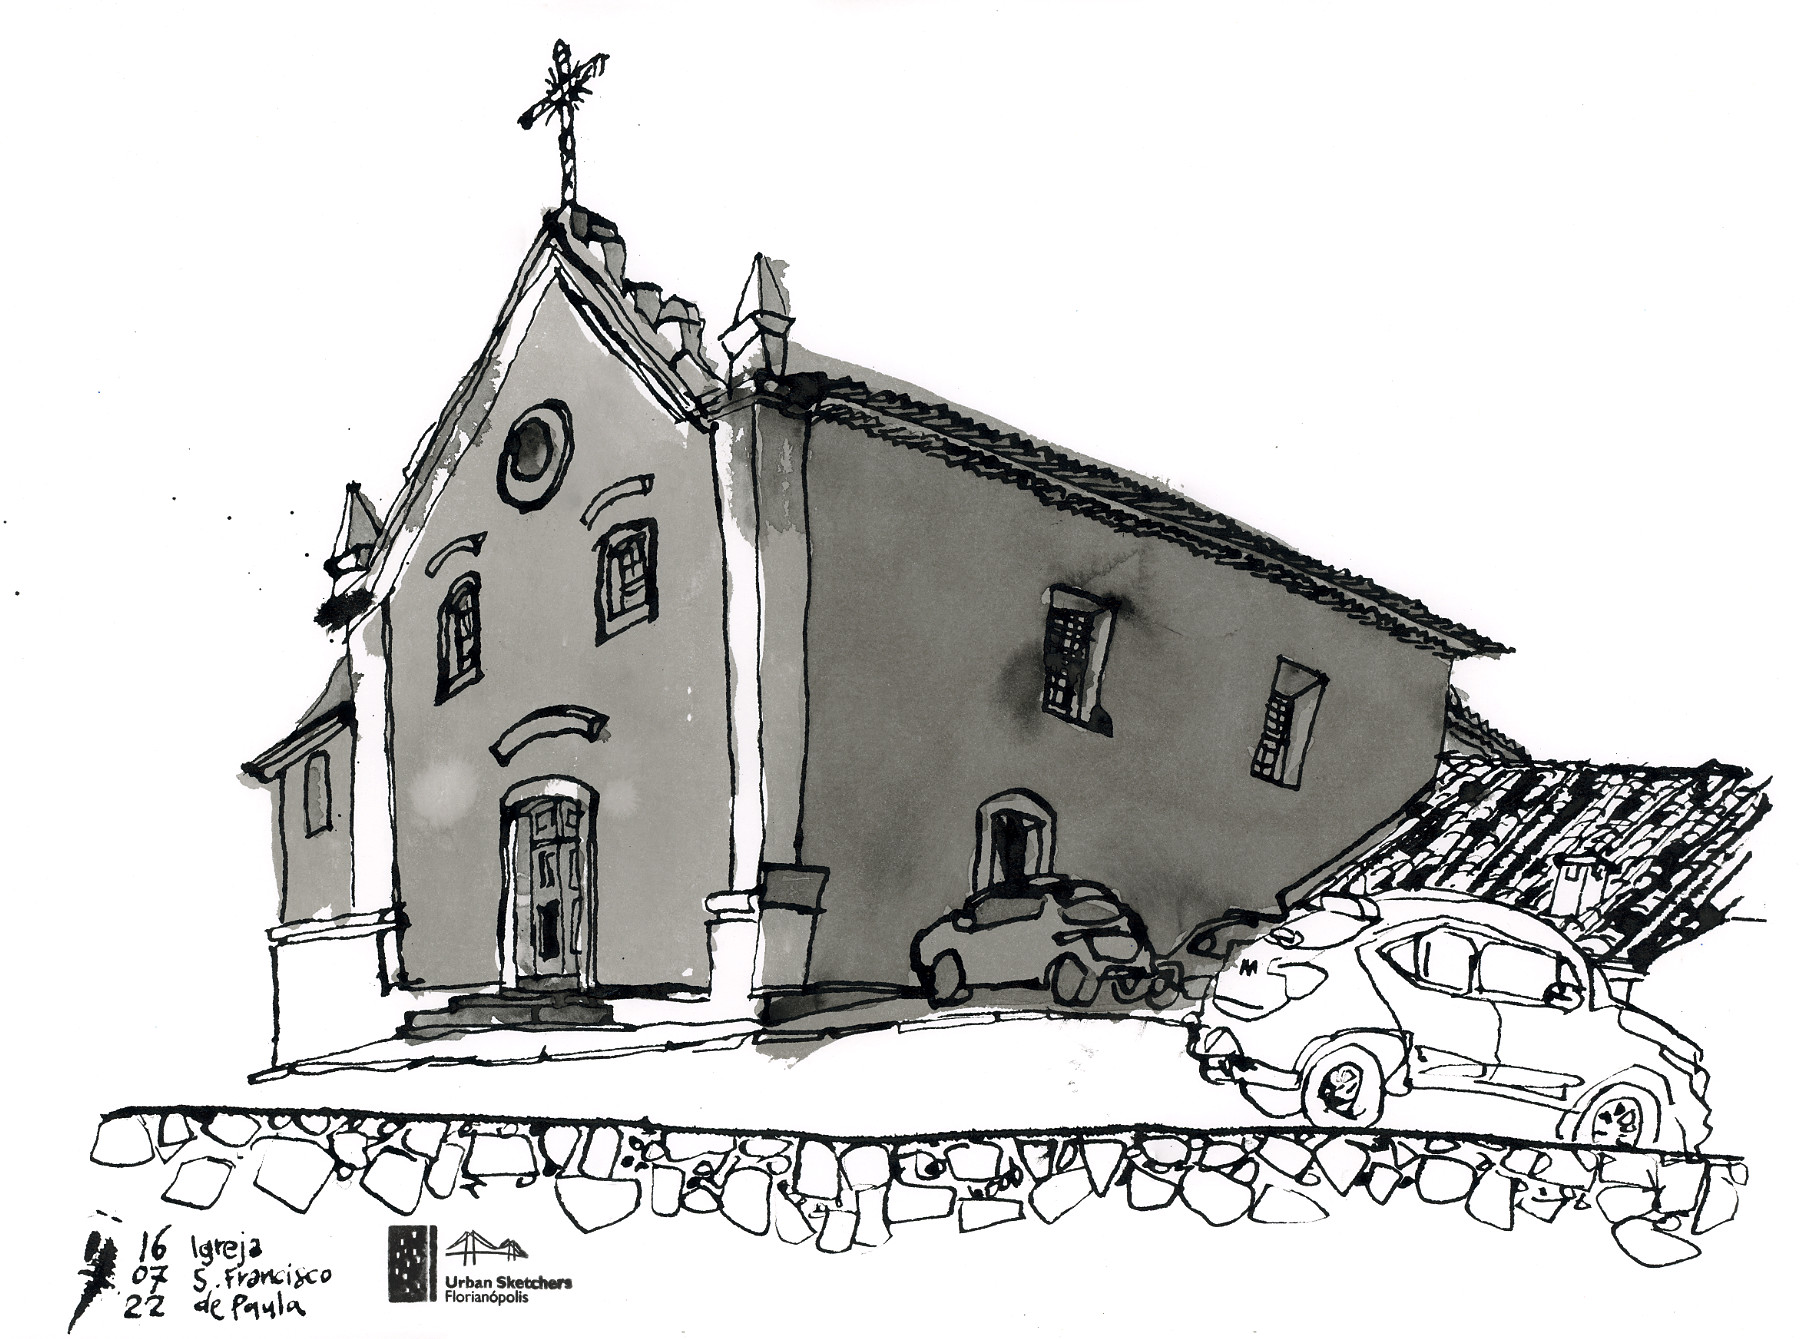 Desenho da igreja São Francisco de Paula, em Canajurê